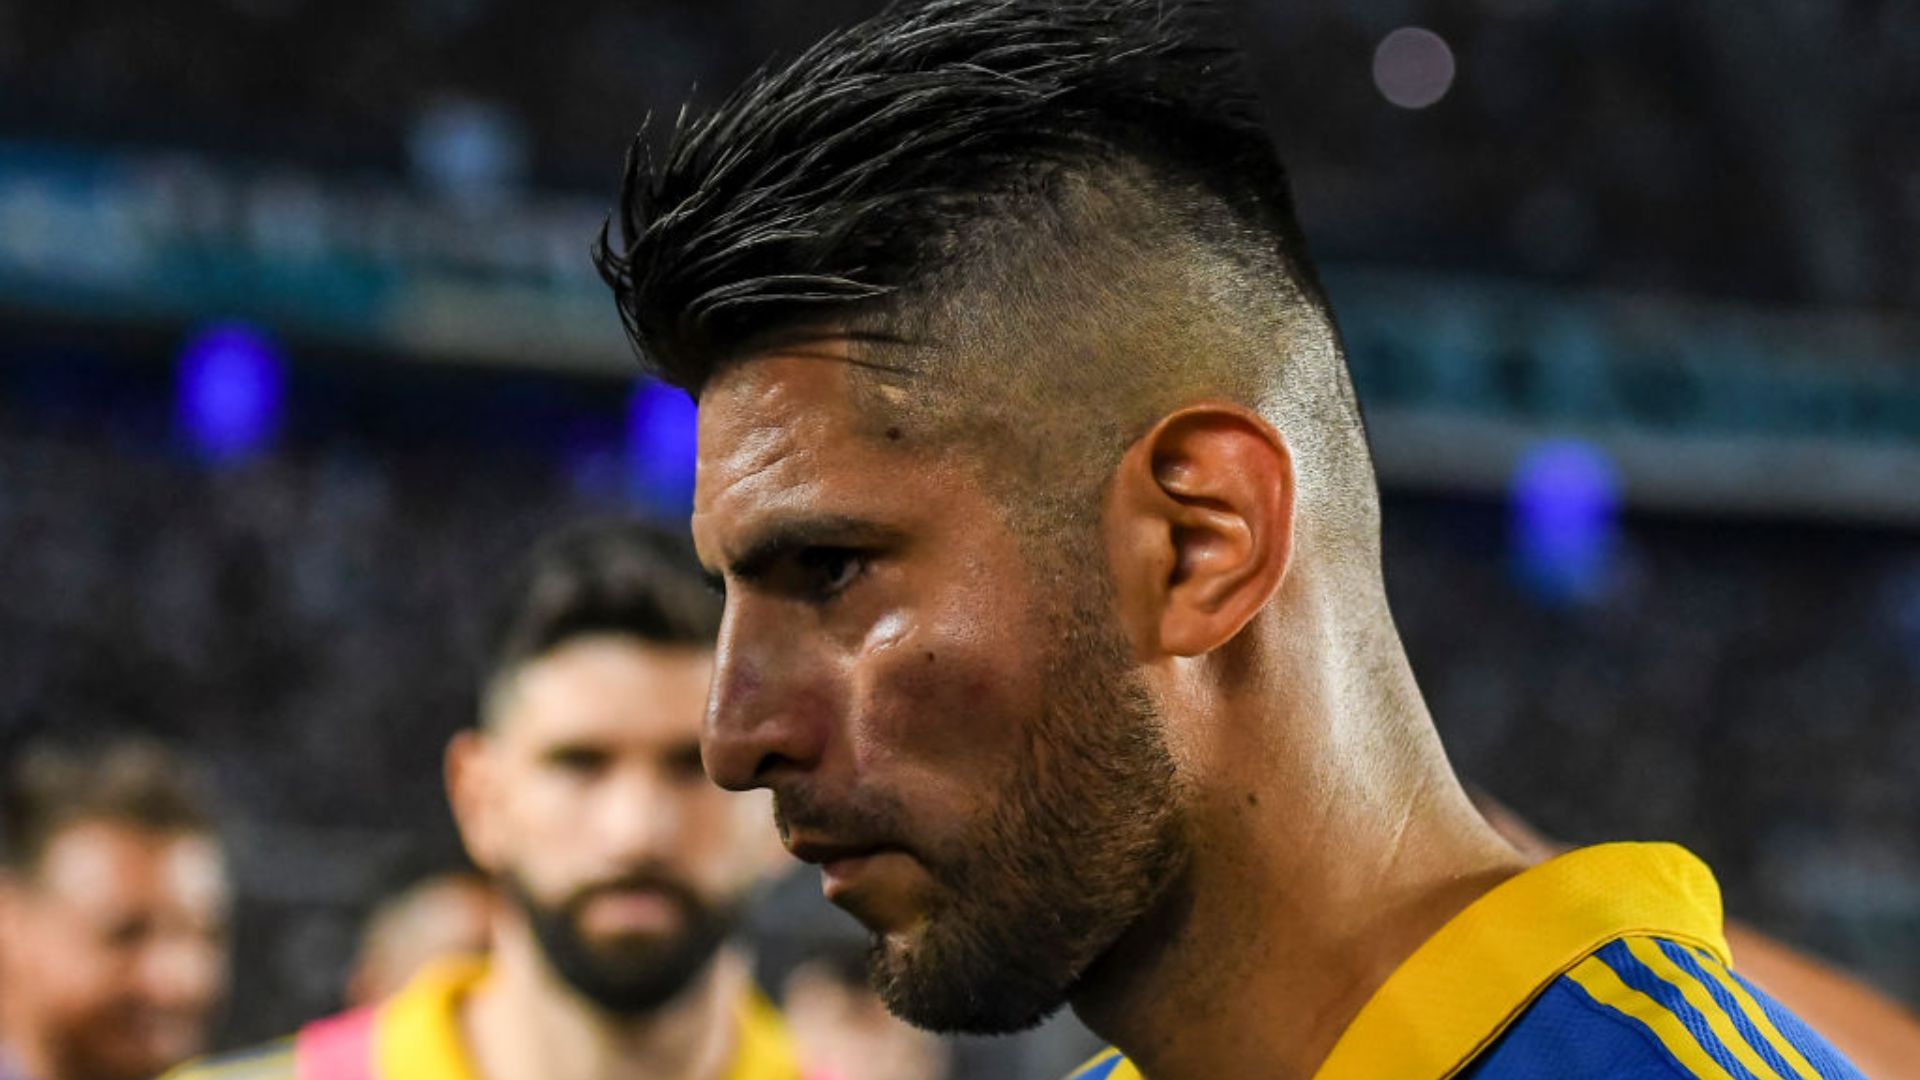 Jogador do Boca Juniors, Zambrano machucado após a confusão